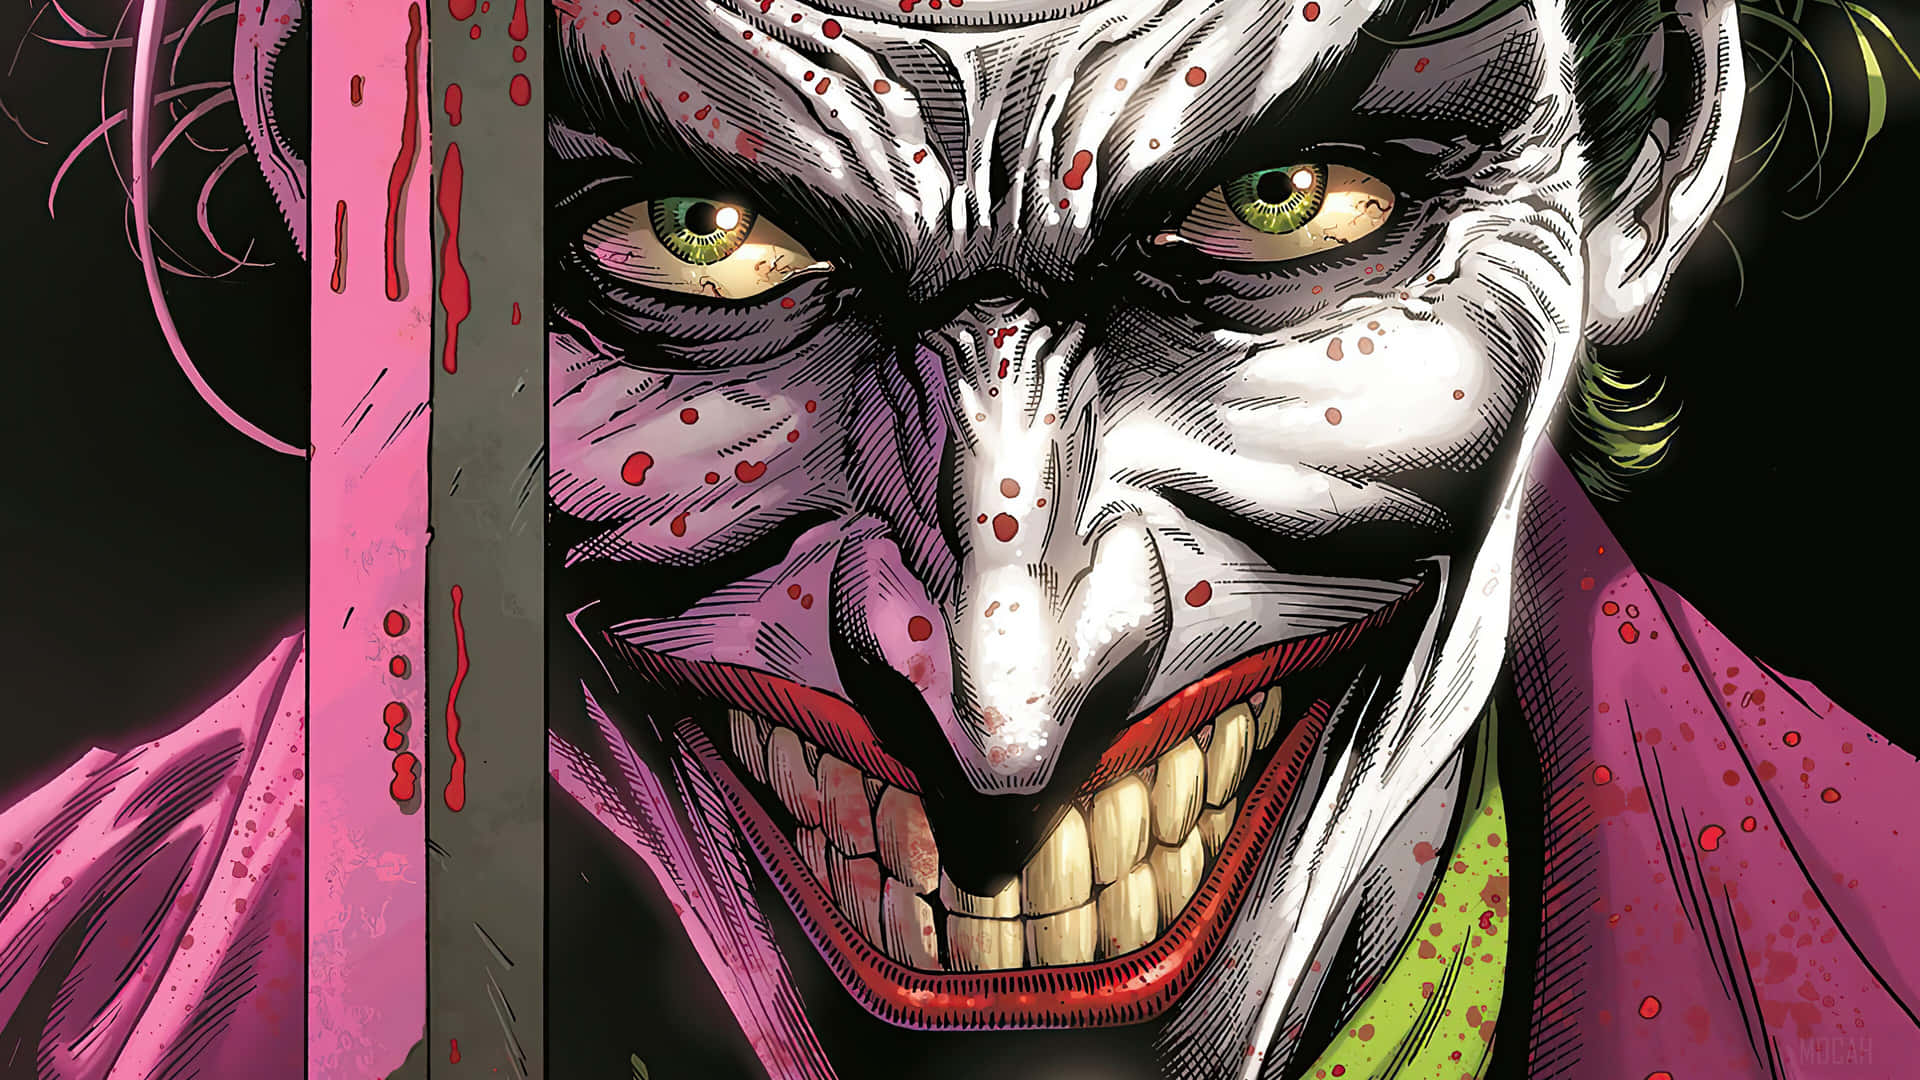 Joker Komiker 3840 X 2160 Wallpaper